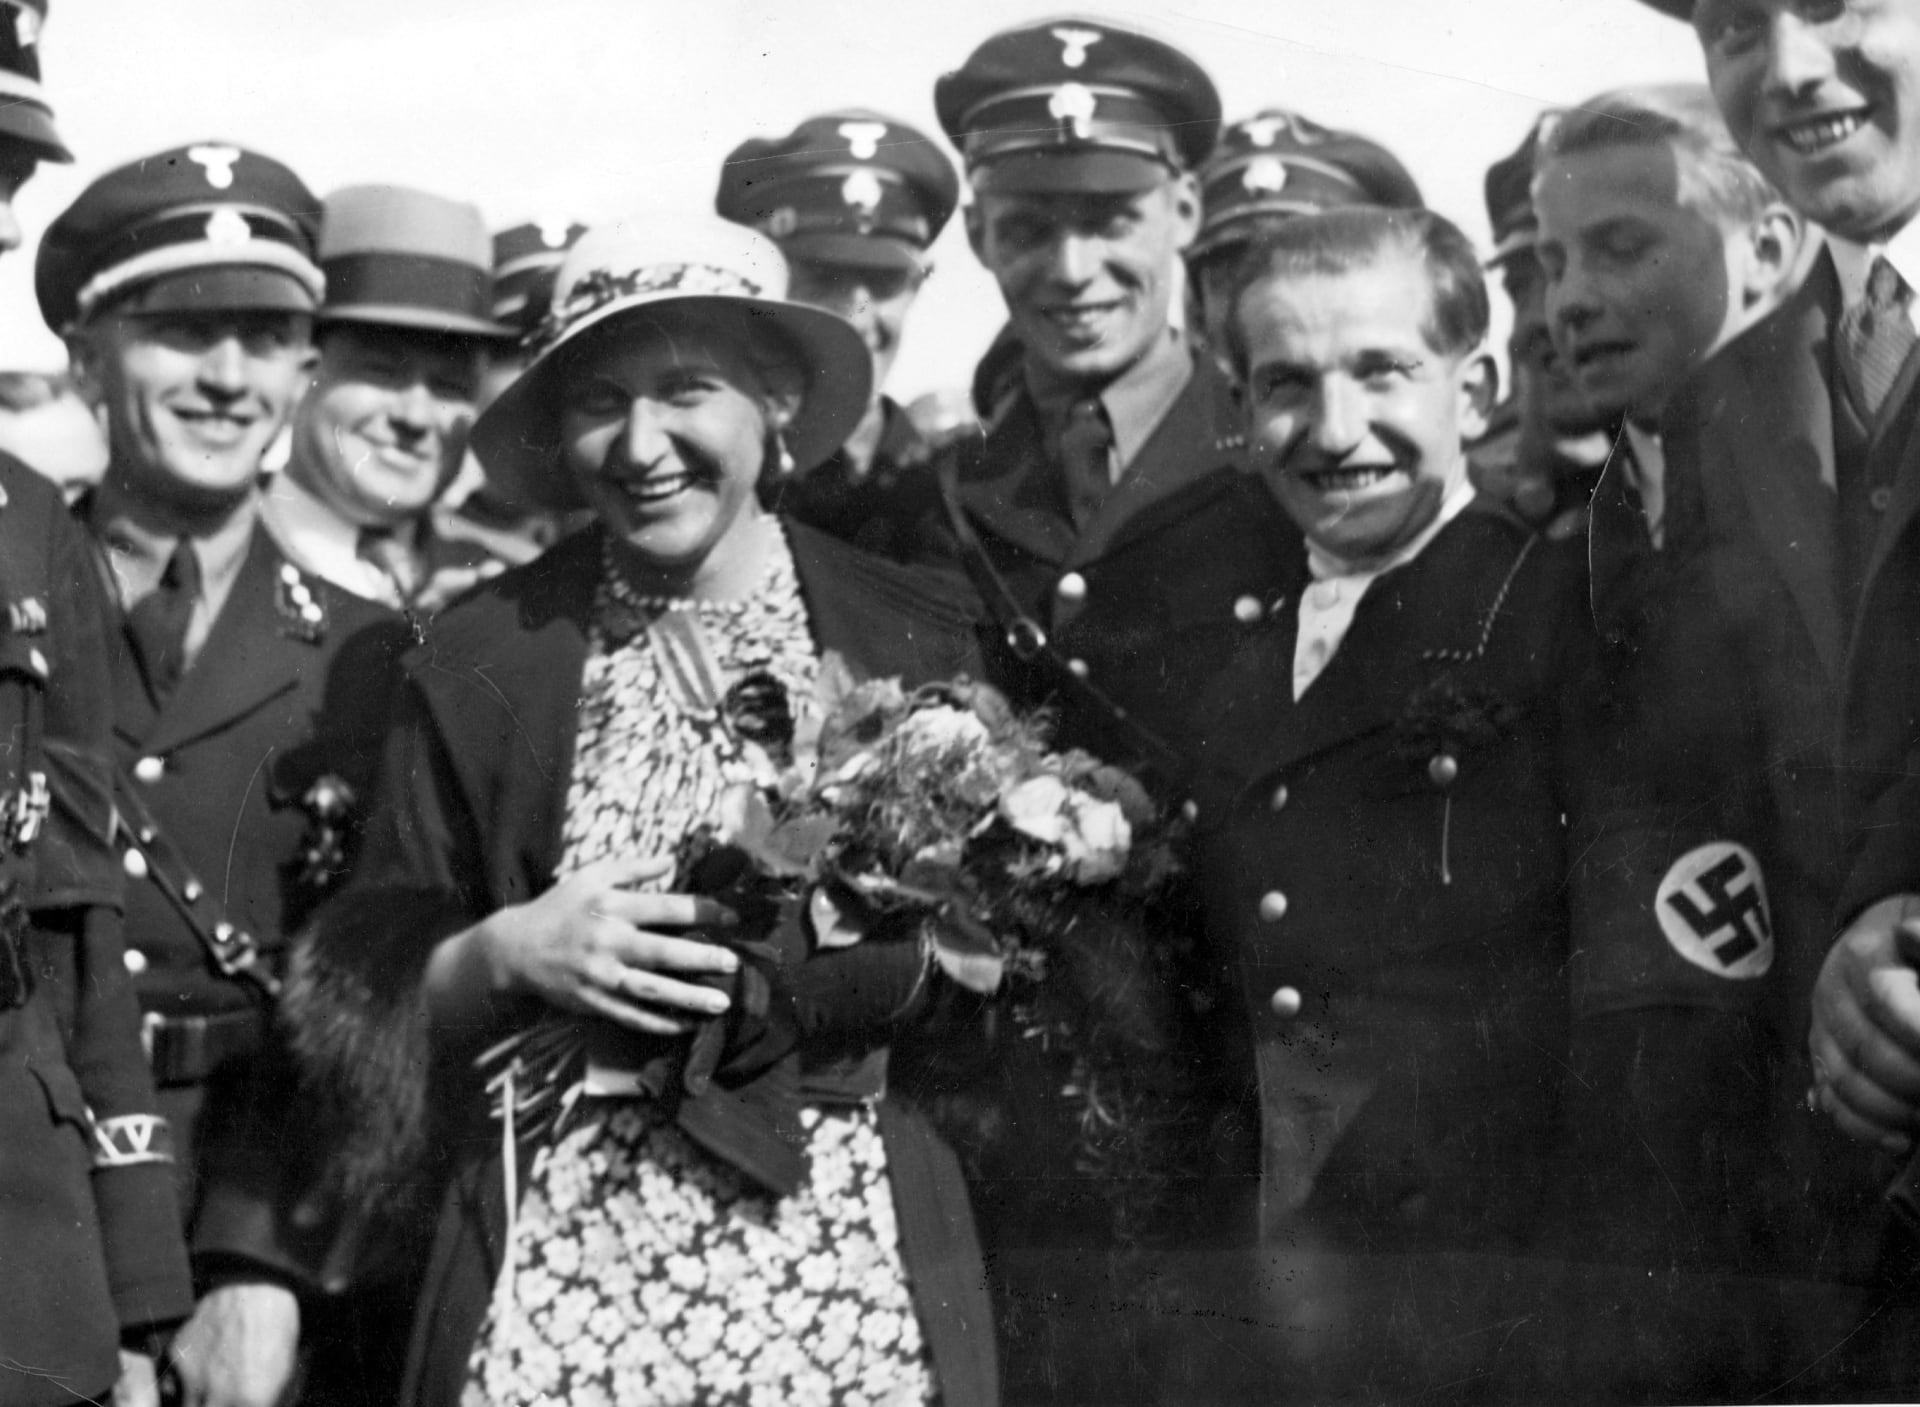 Magda Goebbelsová se účastnila mnoha společenských akcí, včetně vojenských přehlídek.